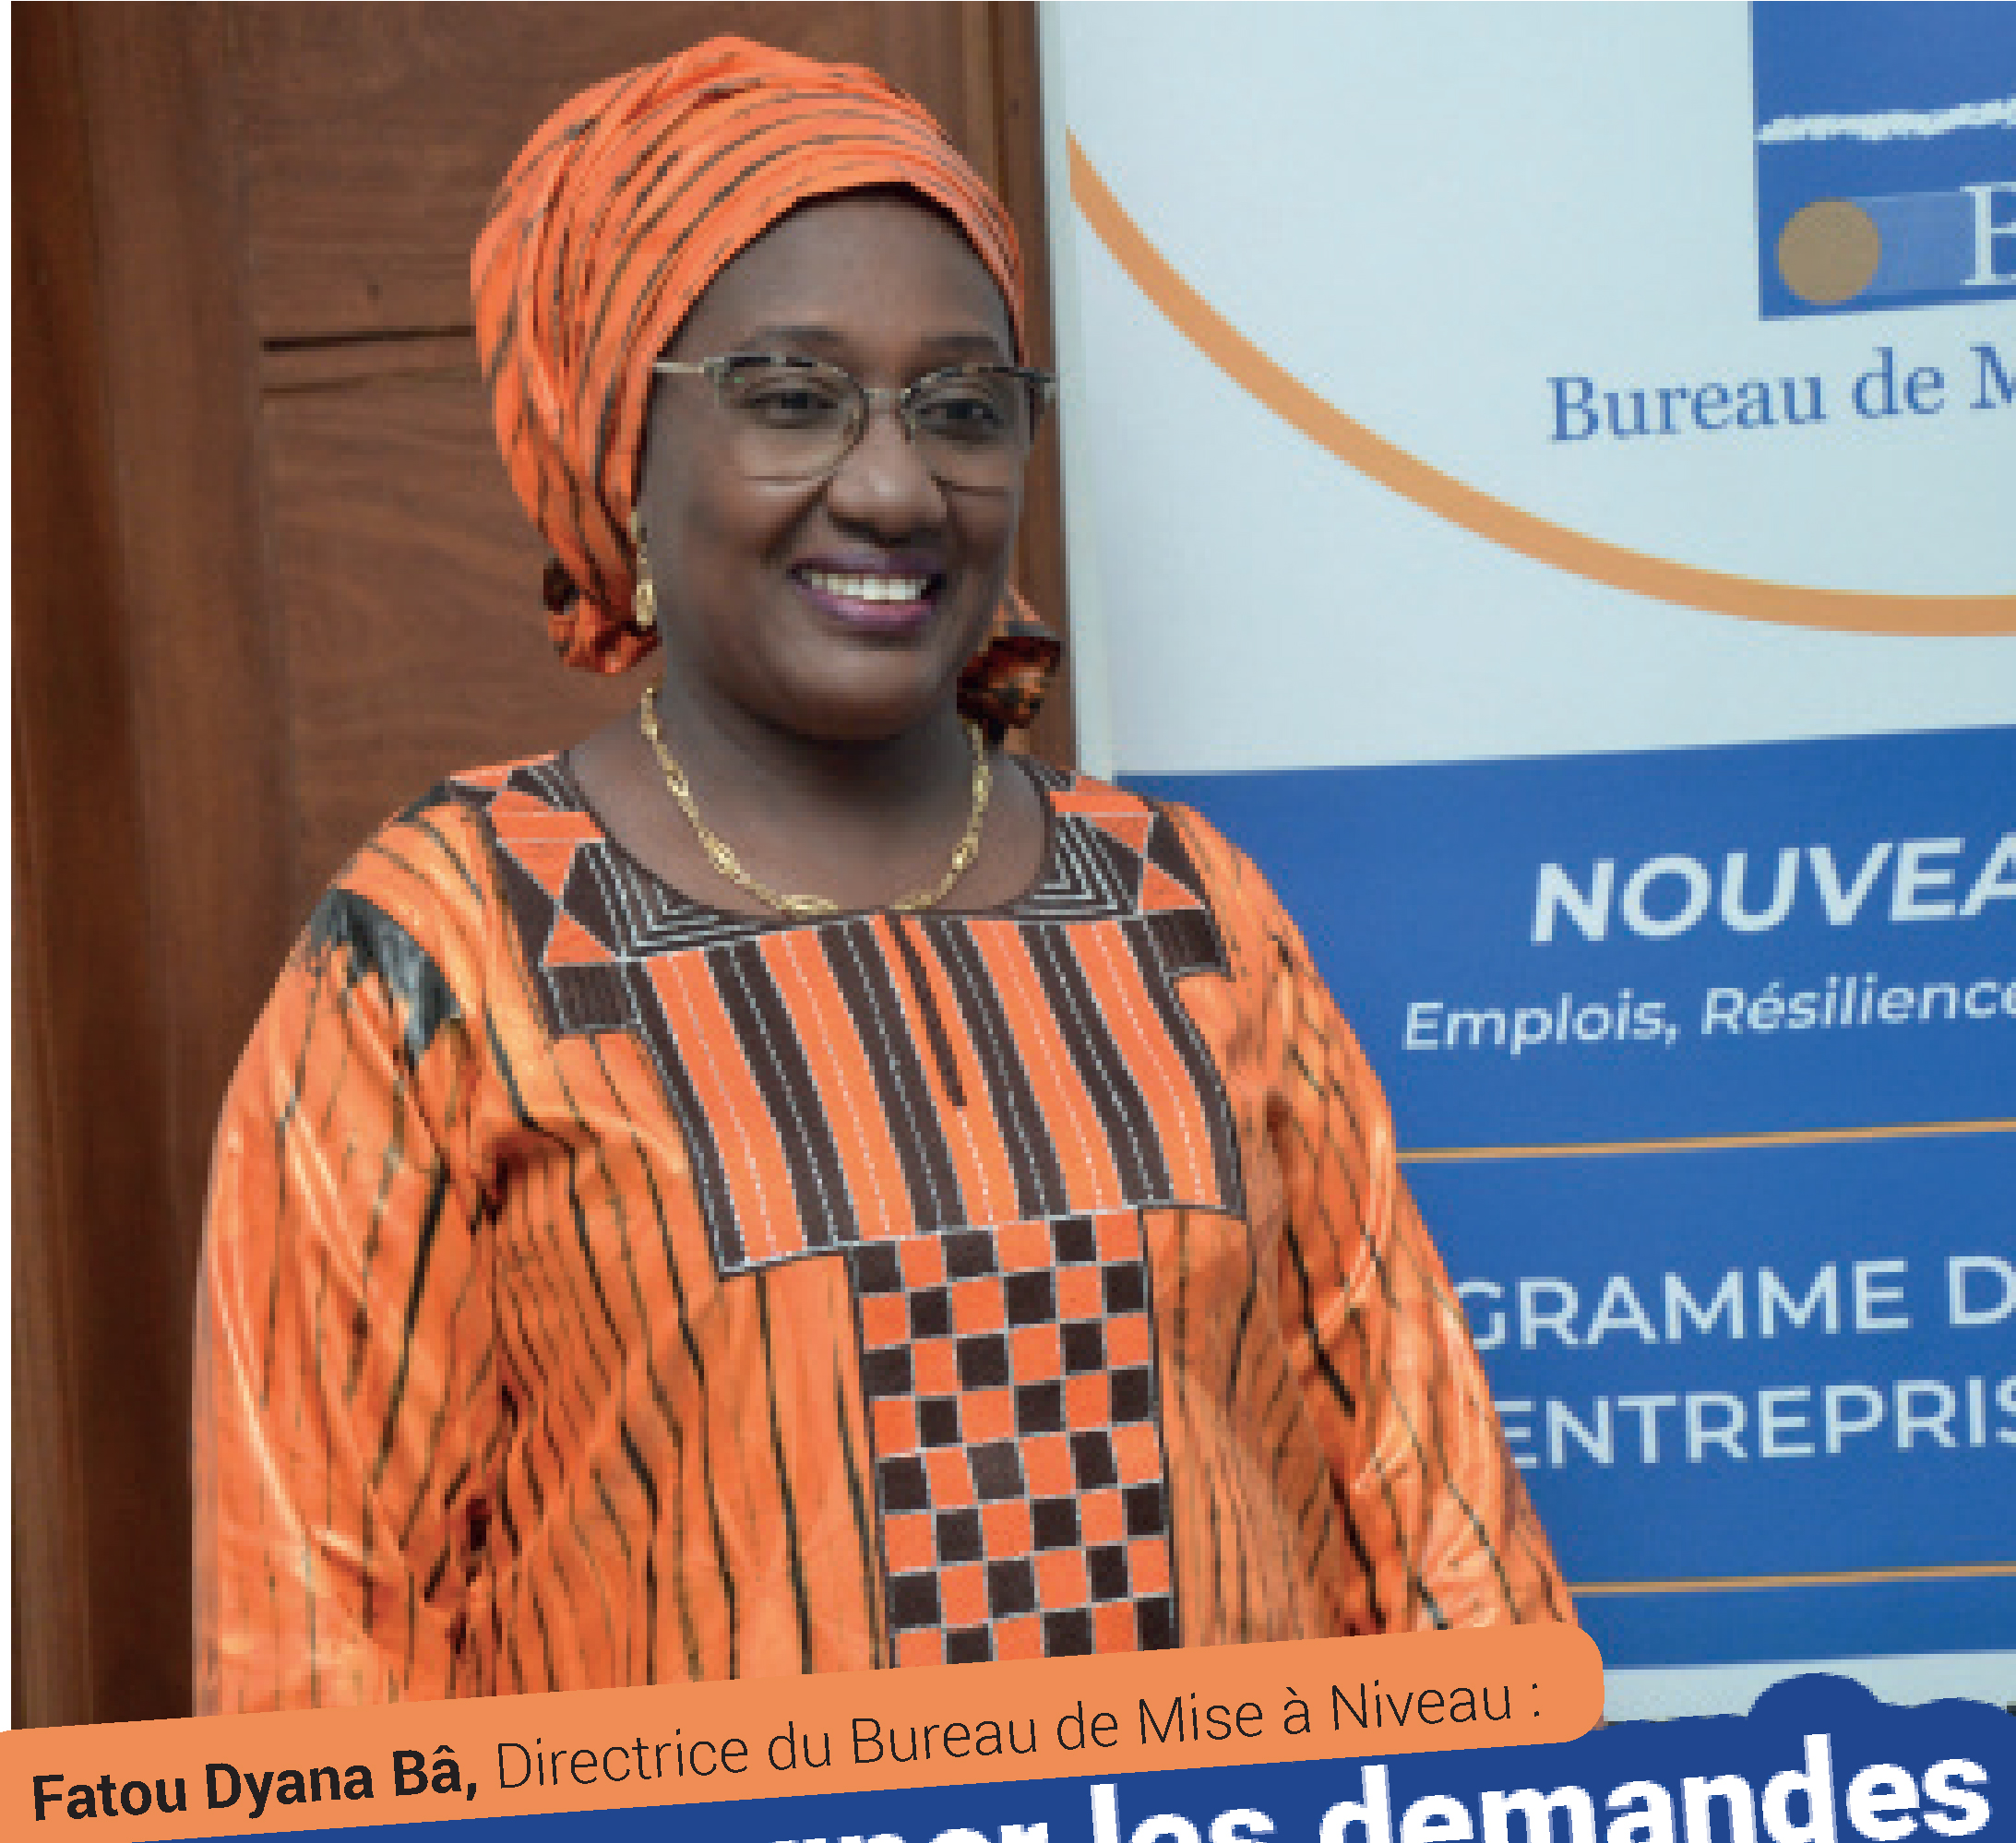 La Directrice du Bureau de Mise à Niveau (BMN) Fatou Dyana Bâ